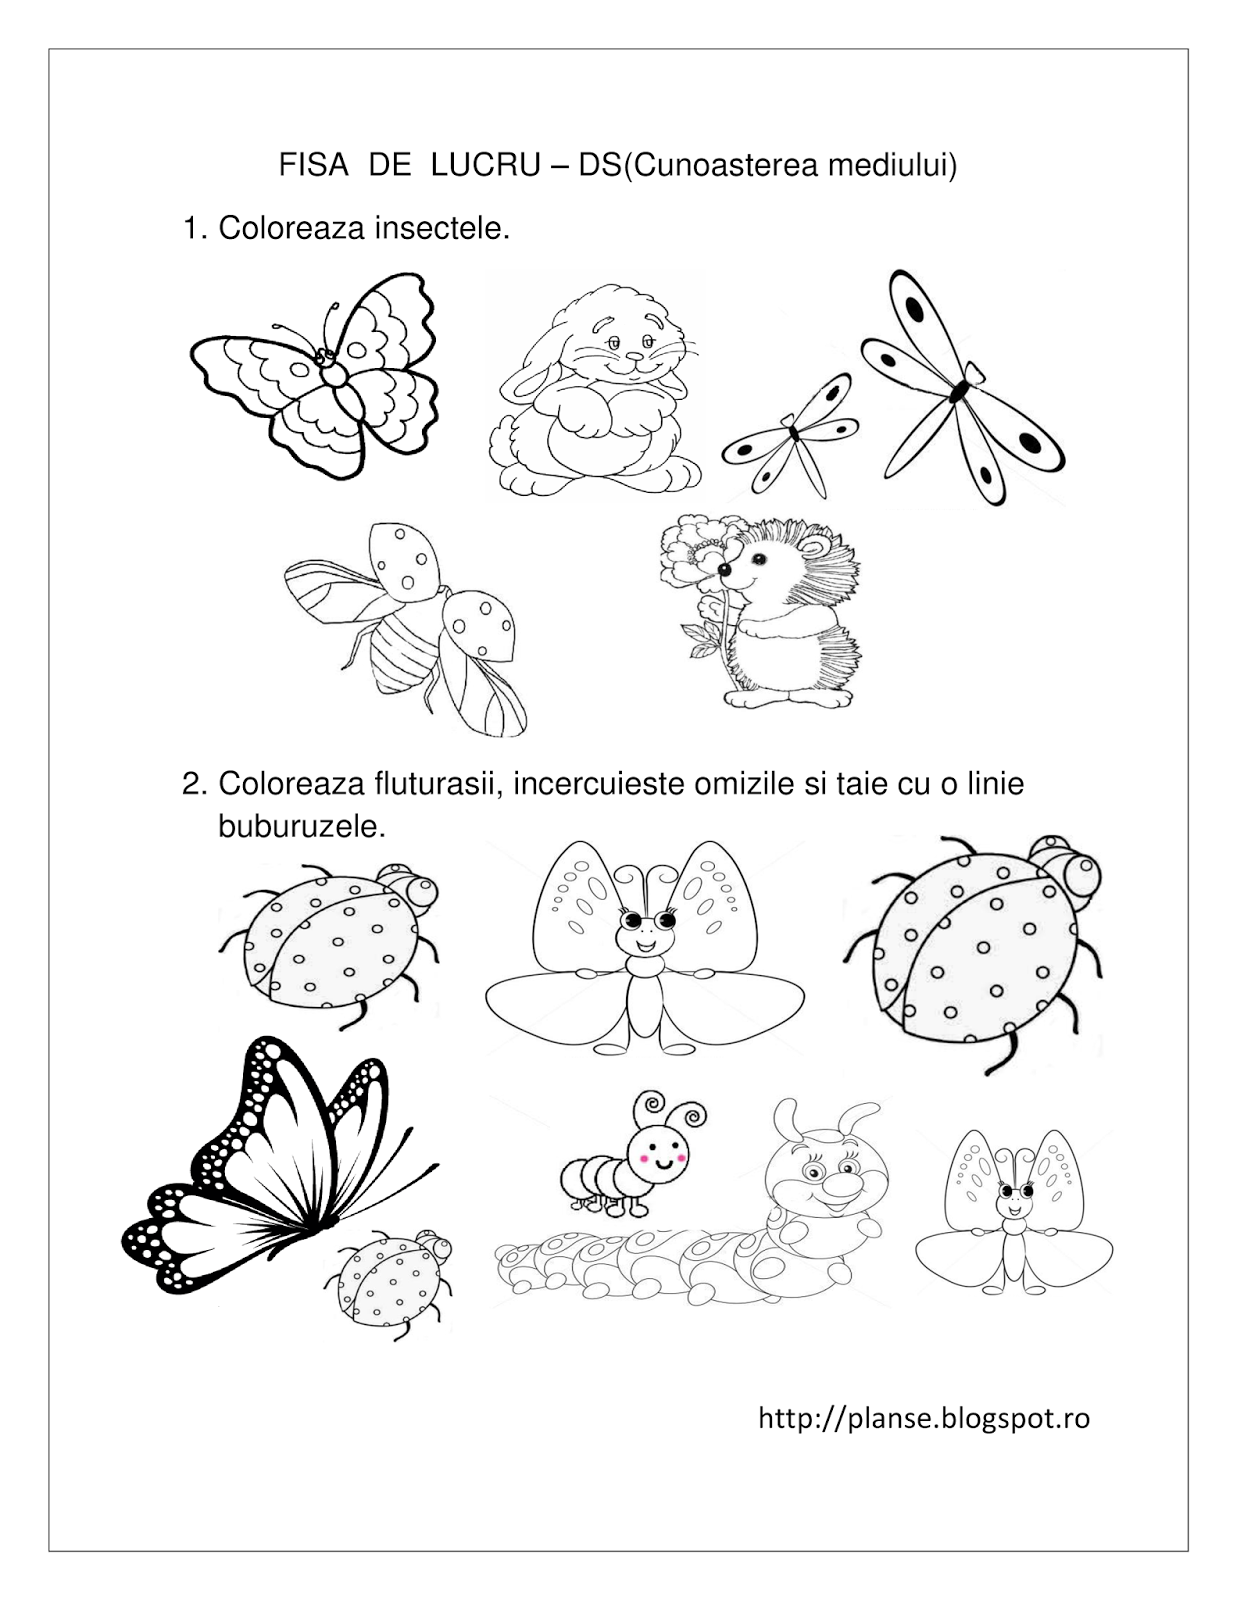 Planse de colorat si fise pentru copii: DS - FISE de lucru cu Insecte - Cunoasterea Mediului